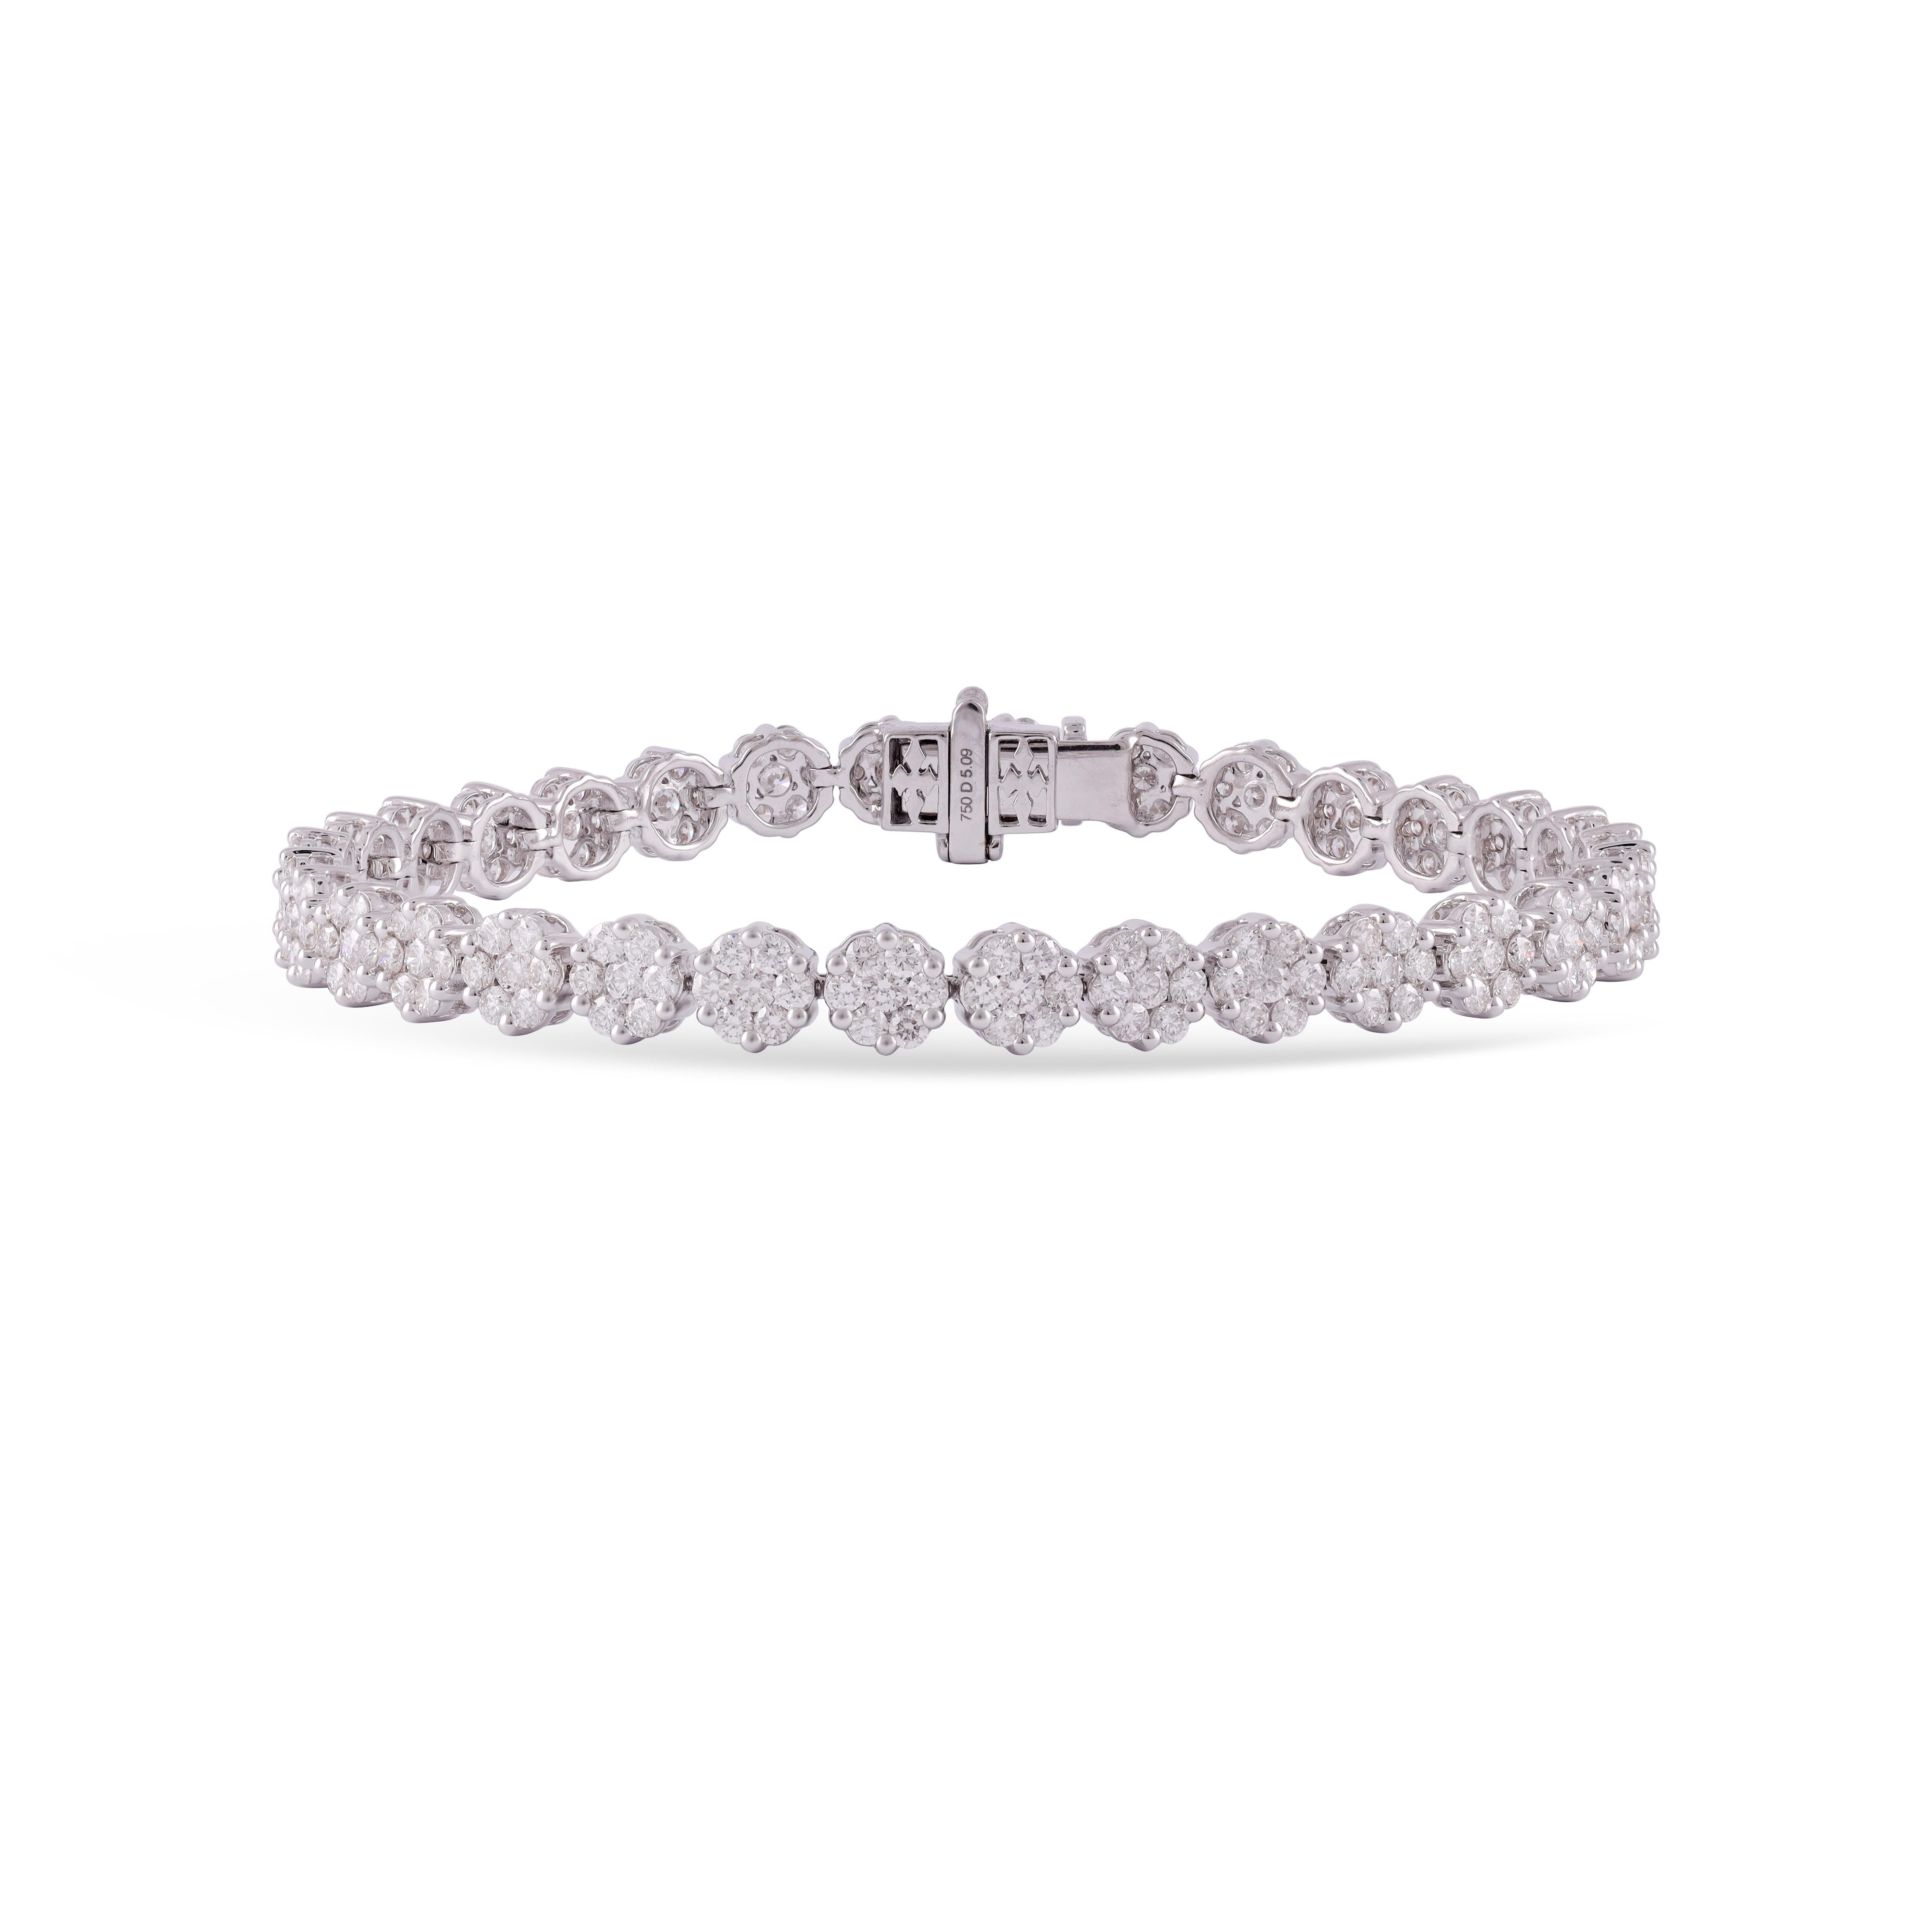 Dies ist ein eleganter Diamant   Armband mit 224 Diamanten im Prinzessinnenschliff  5,09 Karat dieses Armband ganz in 18 Karat Weißgold, das ist ein klassisches Tennisarmband.

Größe - 7